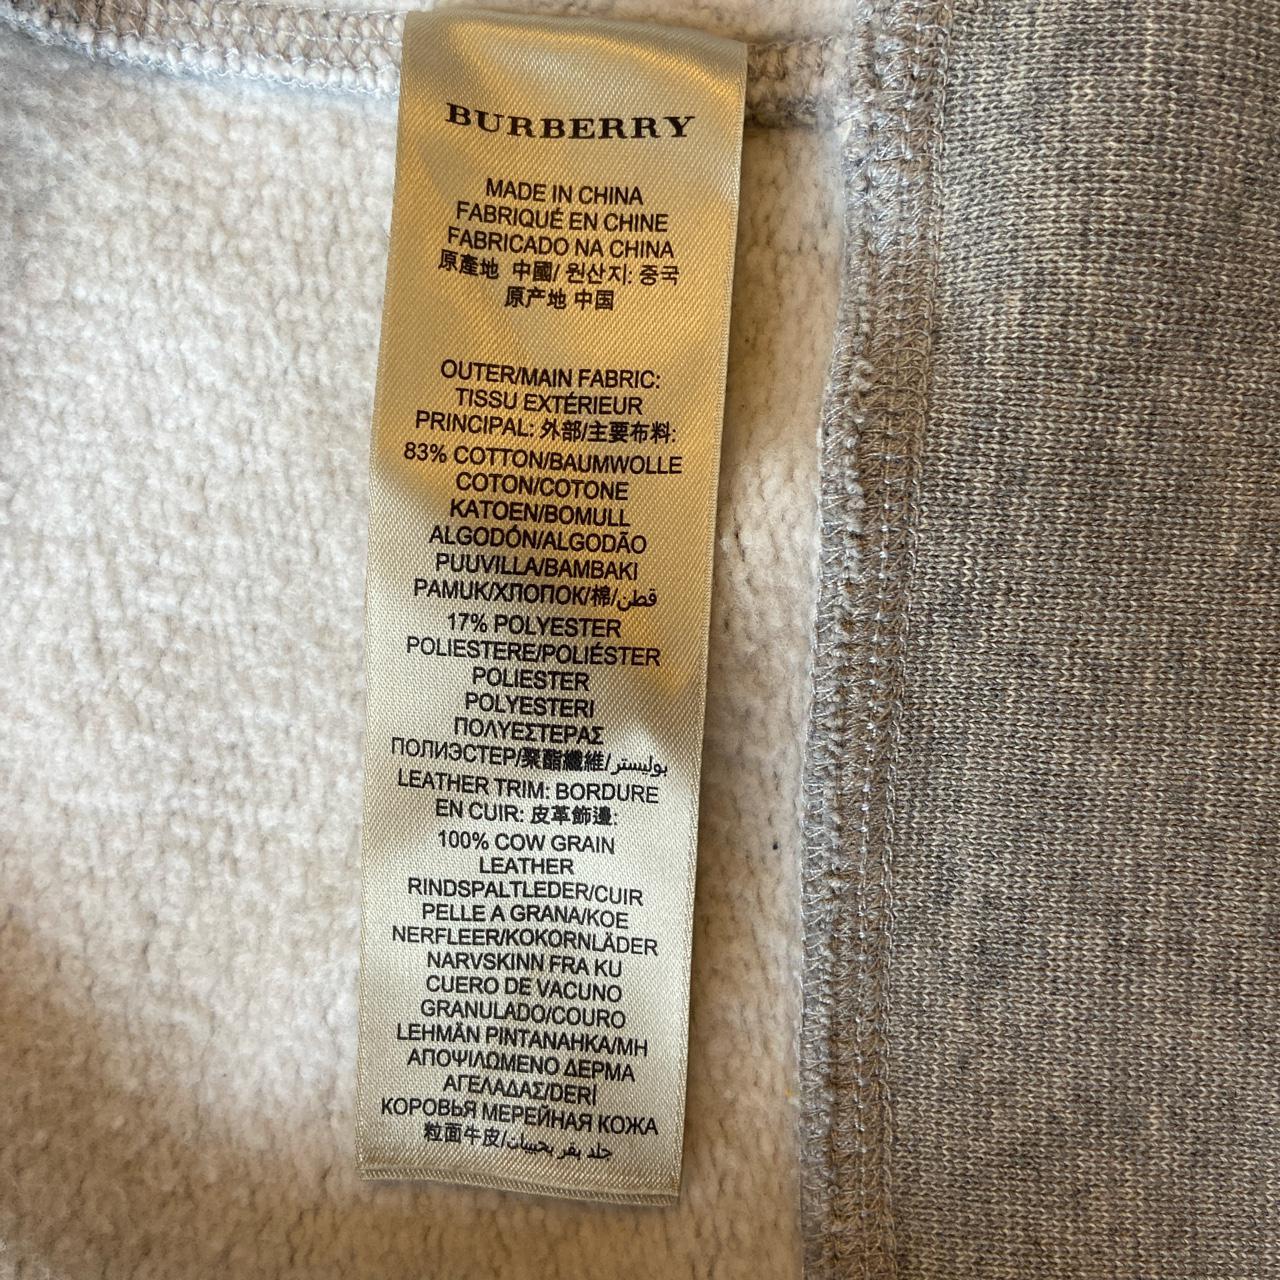 Product Image 4 - Burberry Hoodie - Medium

Burberry hoodie